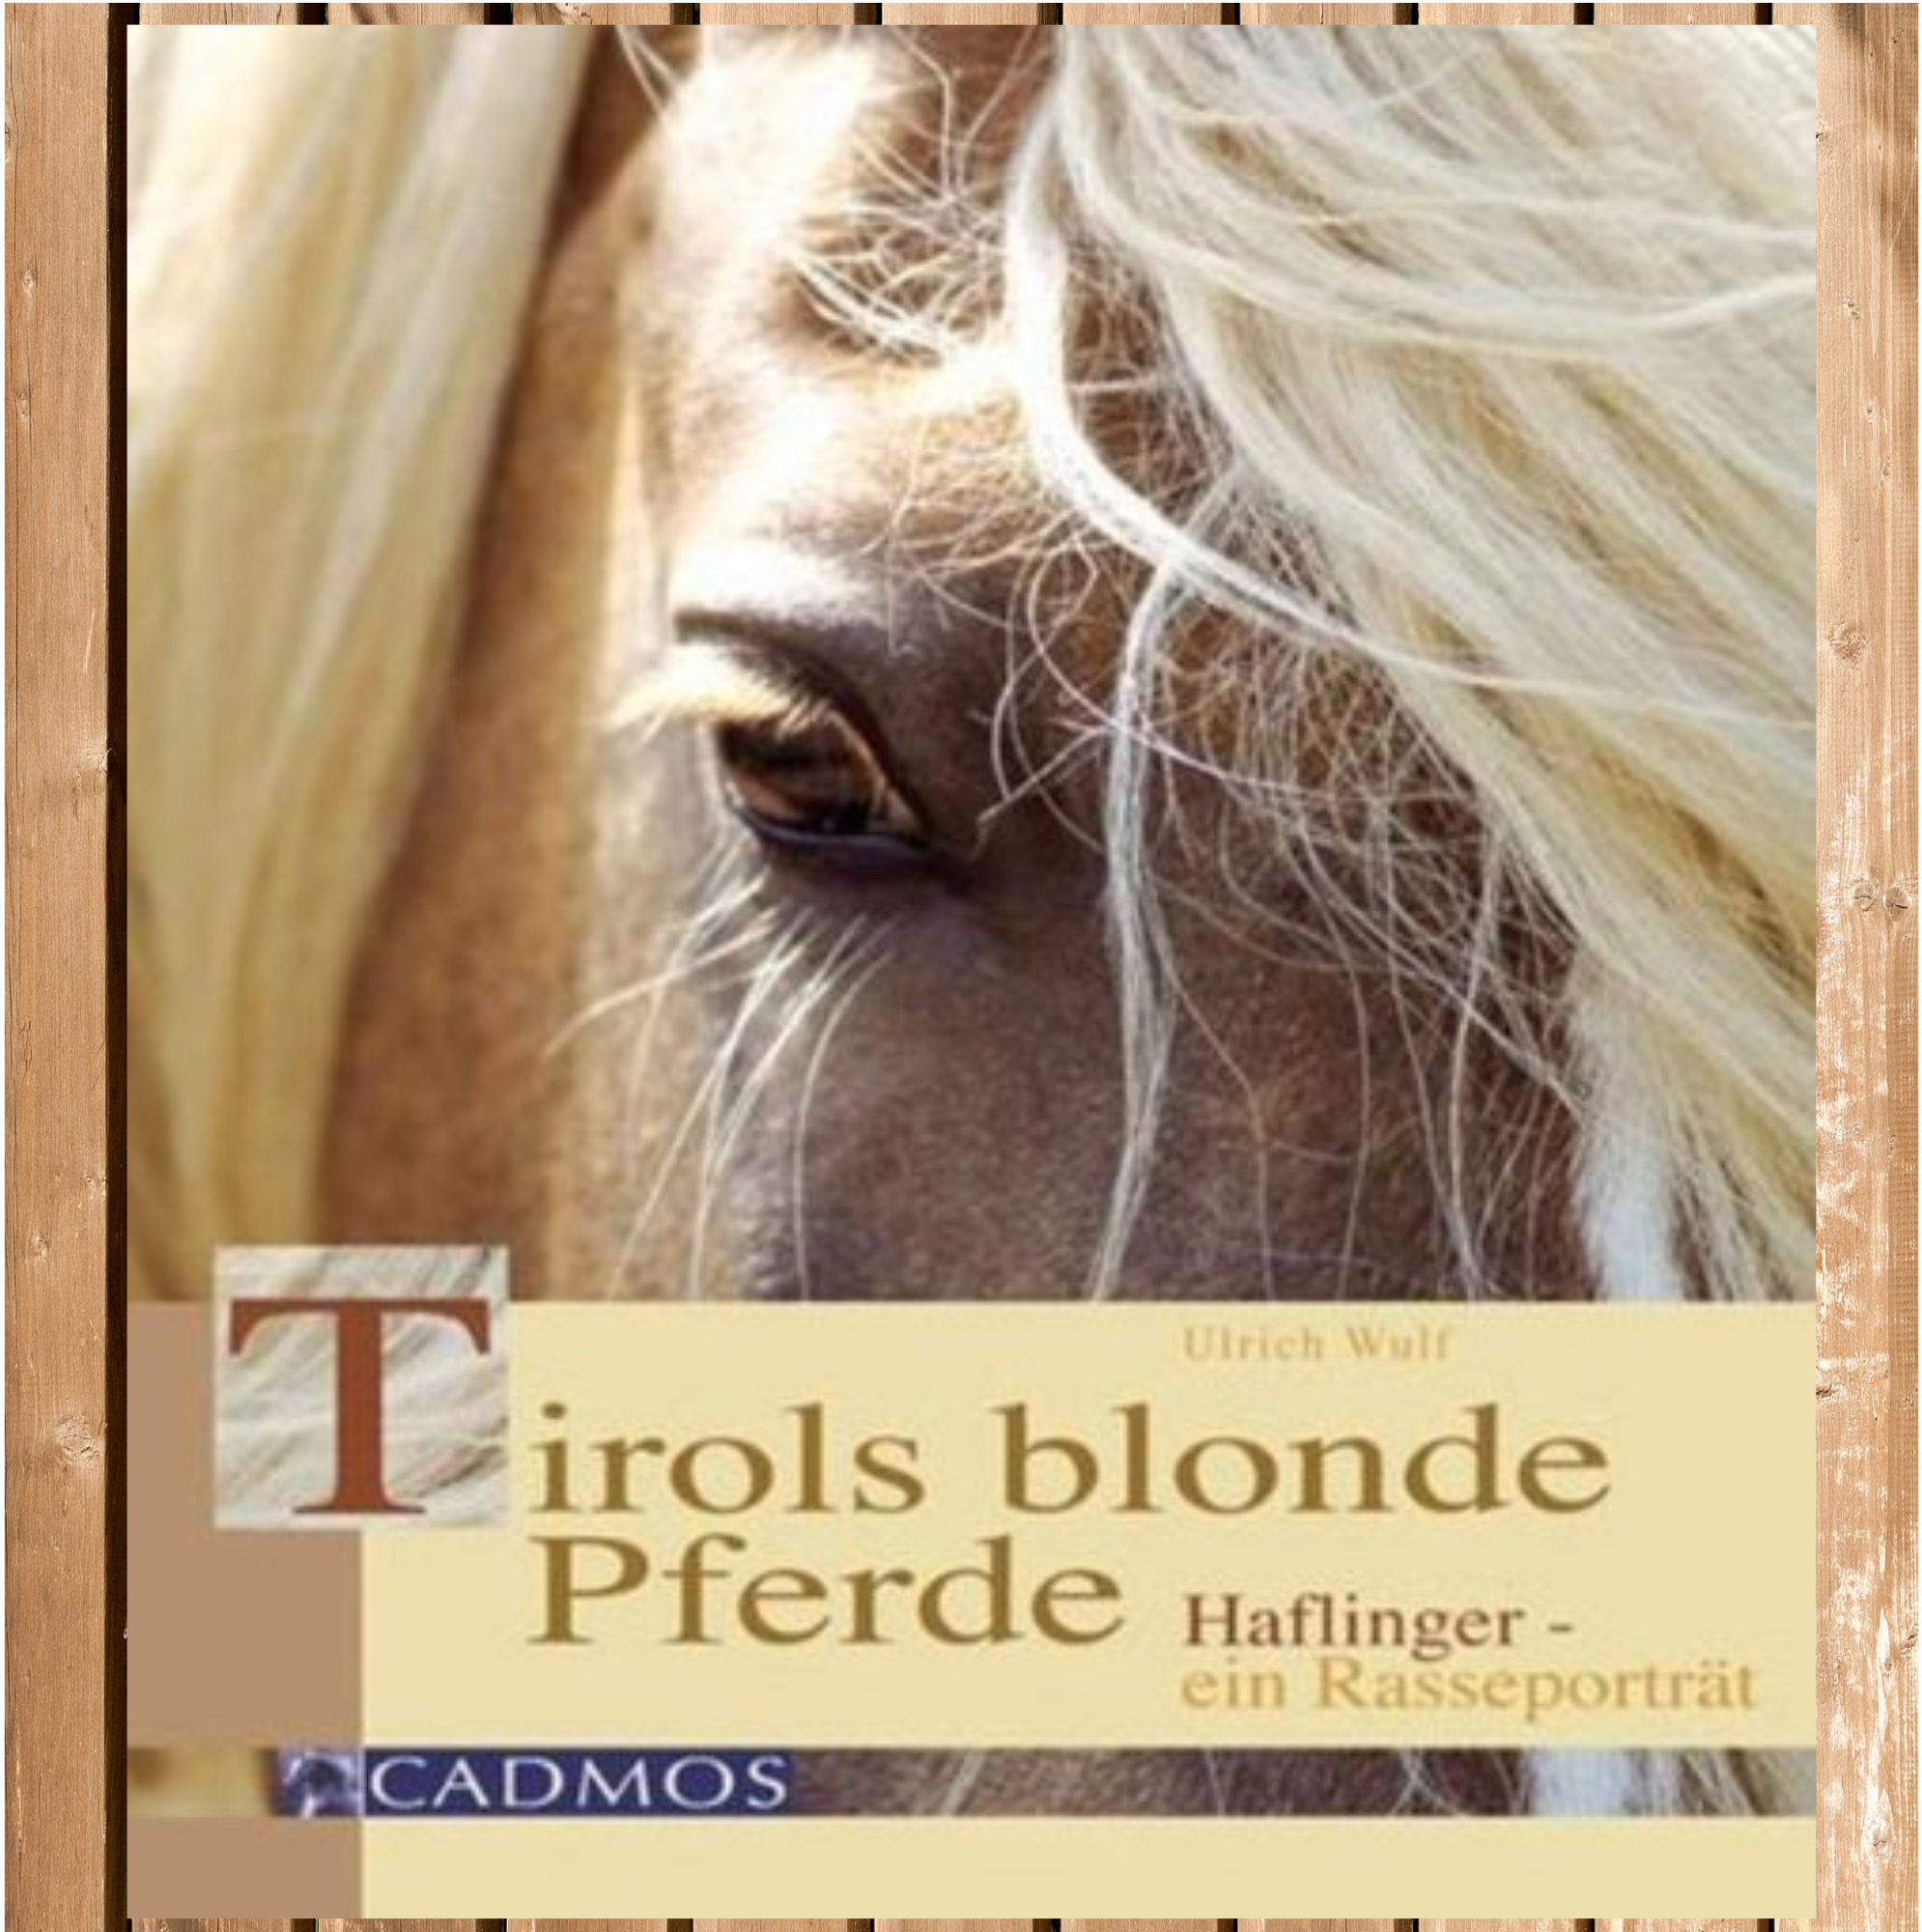 Tirols blonde Pferde, Haflinger - ein Rasseporträt